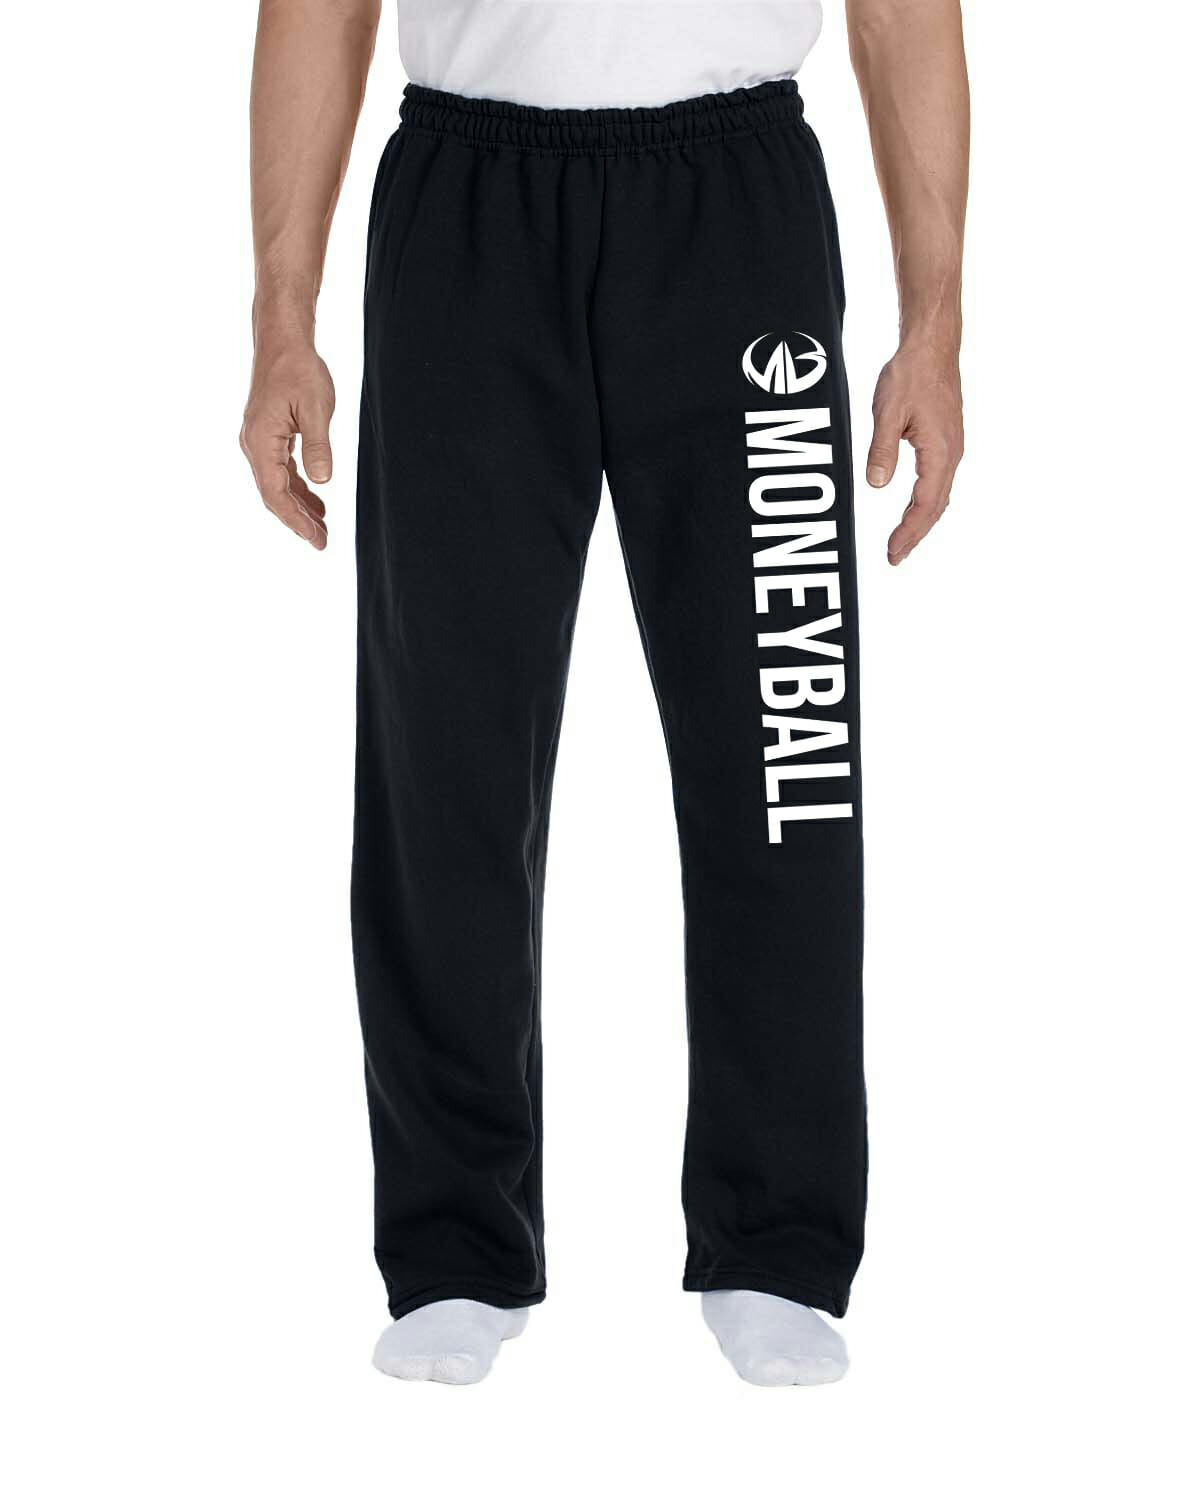 Moneyball Classic Sweatpants - Moneyball Sportswear